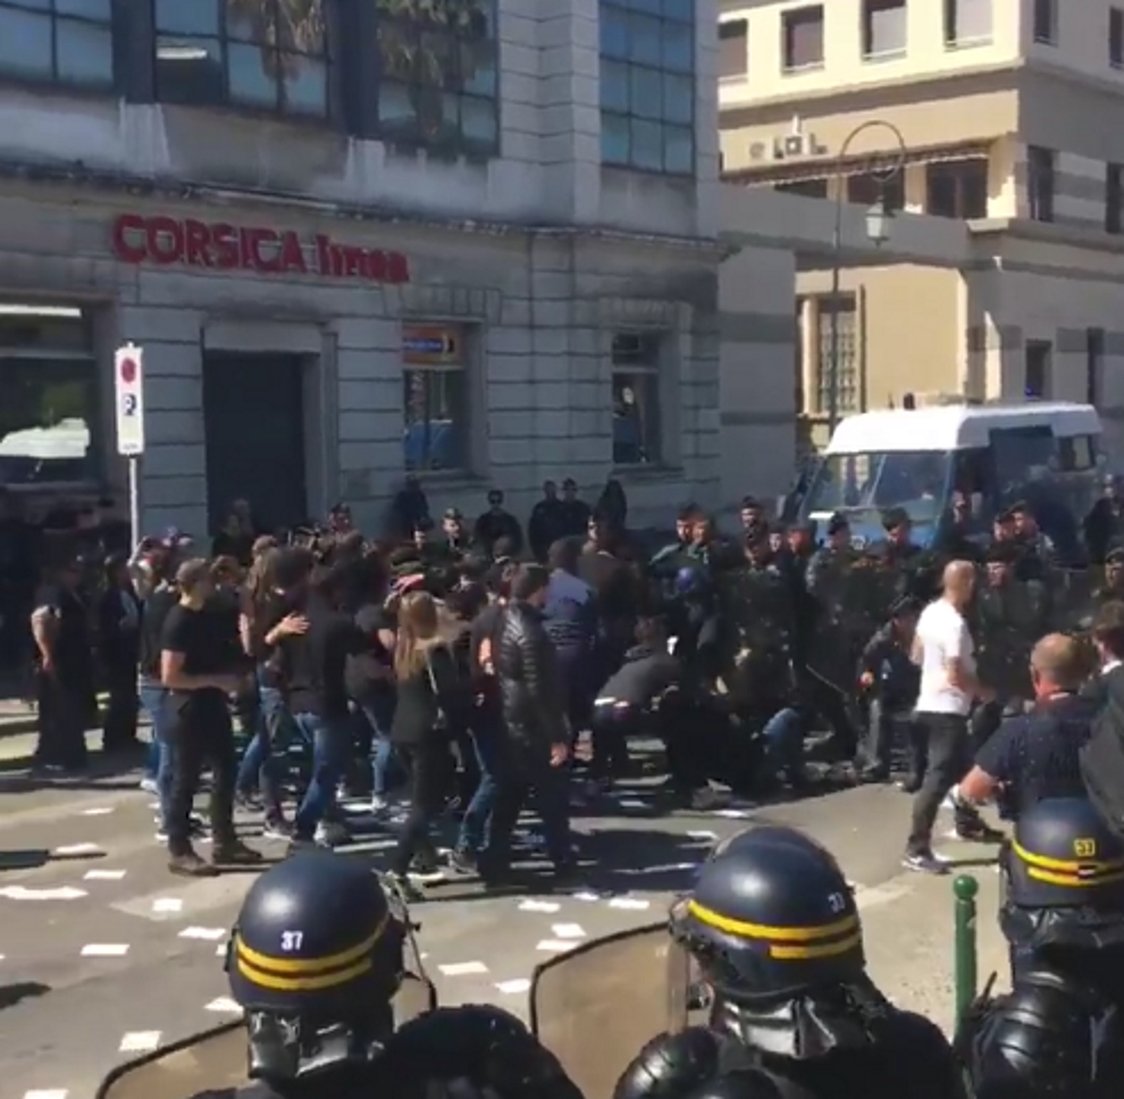 [VÍDEO]: Independentistas corsos boicotean un acto de Marine Le Pen y los expulsan a empujones